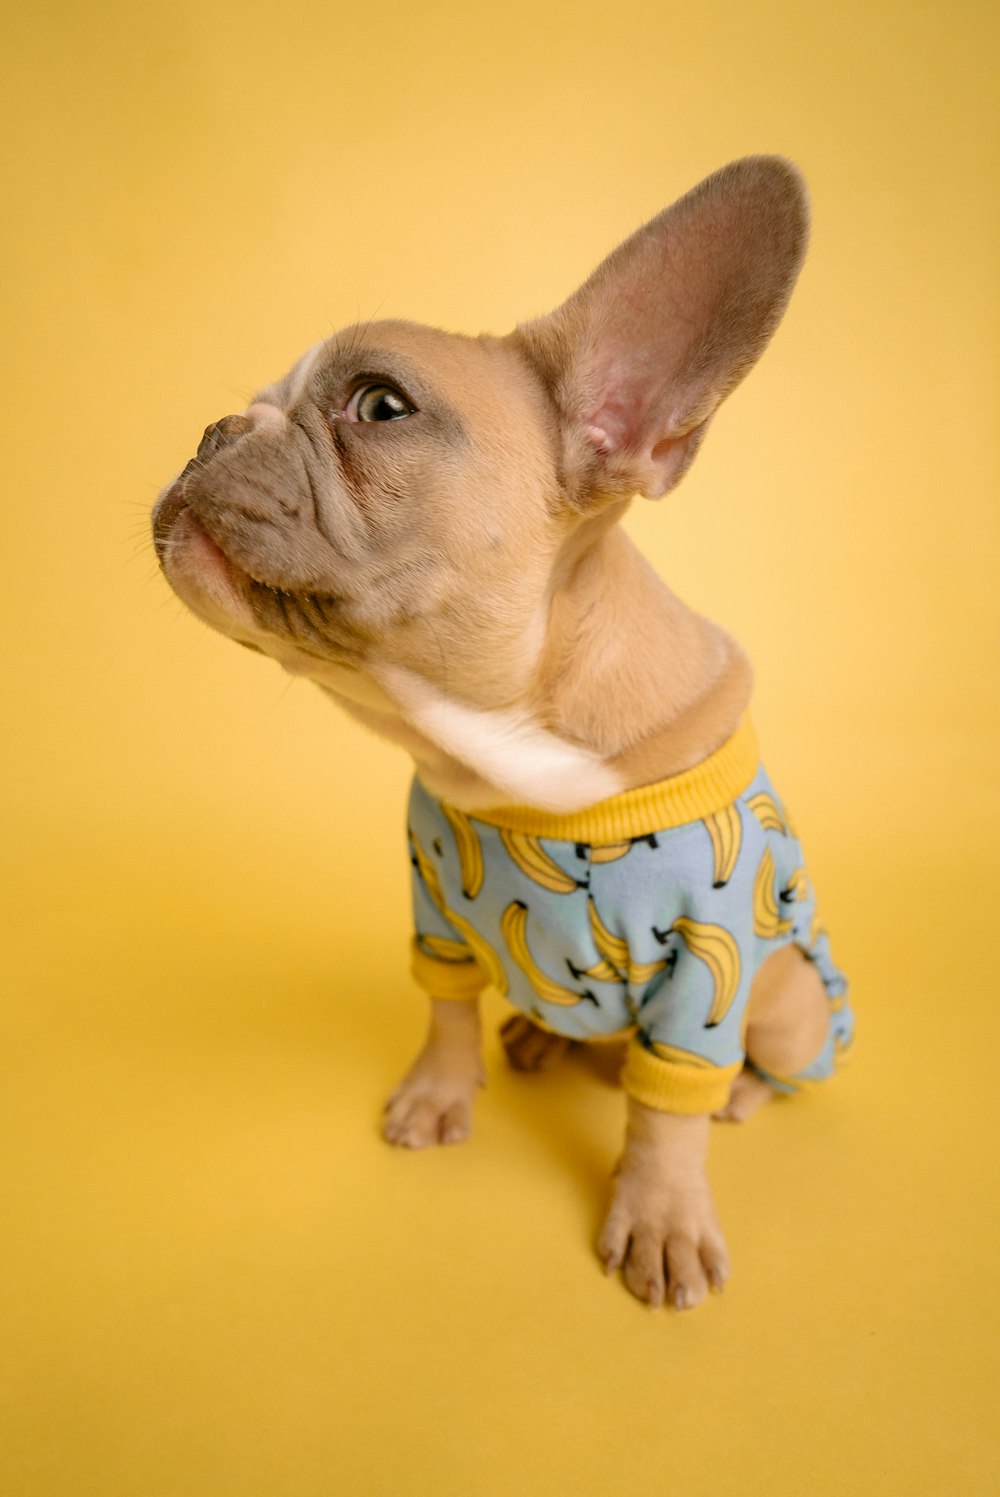 brauner kurzhaariger kleiner Hund im blau-weißen Polka Dot Shirt